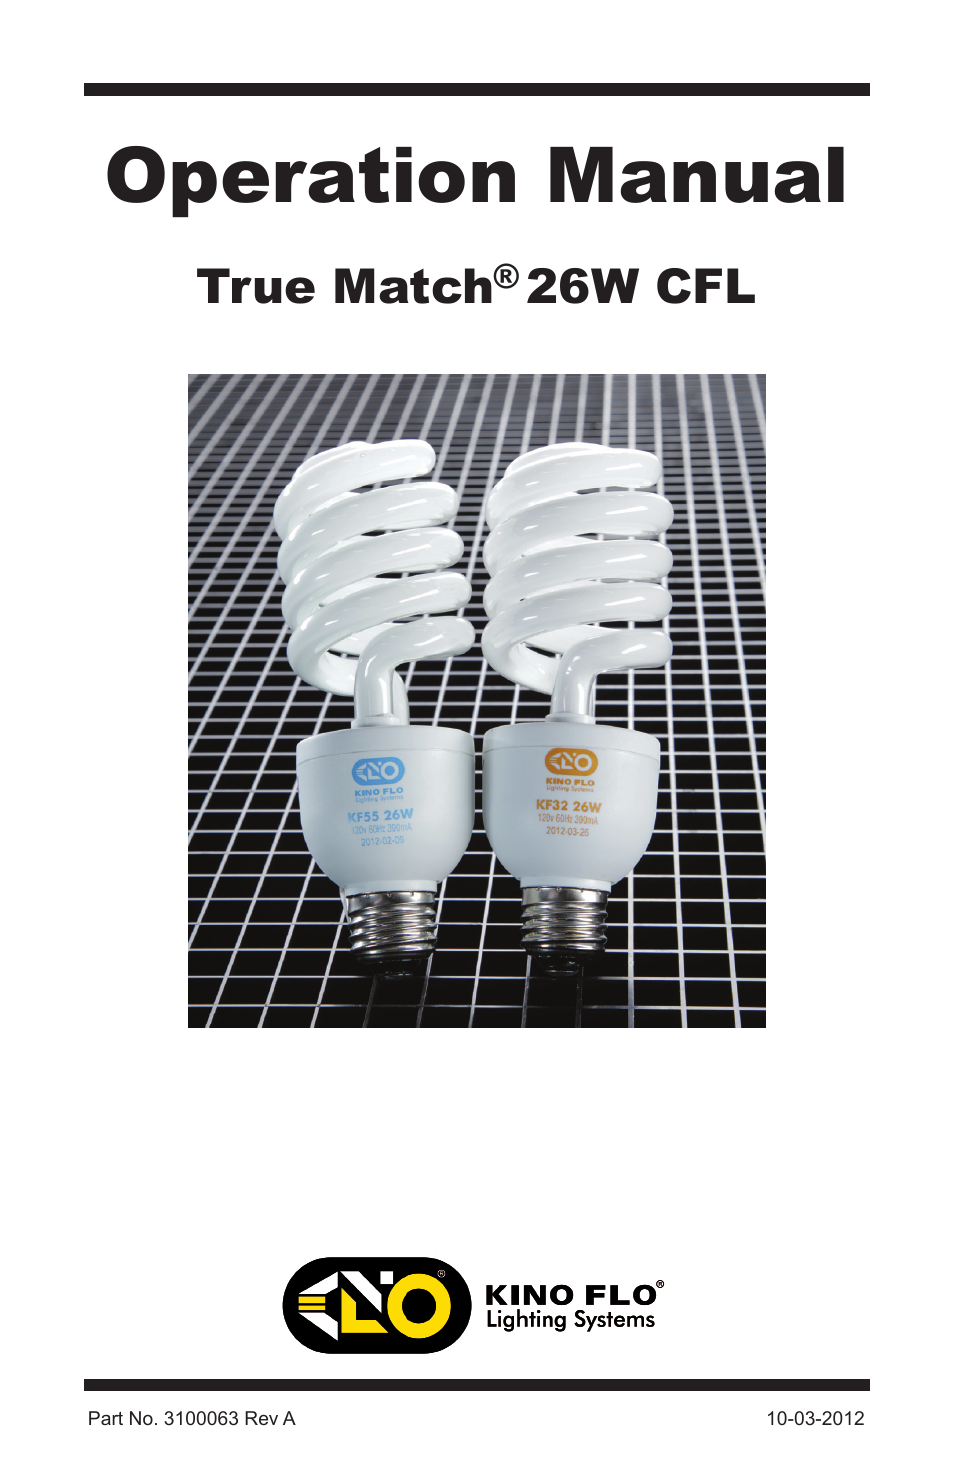 True Match 26W CFL